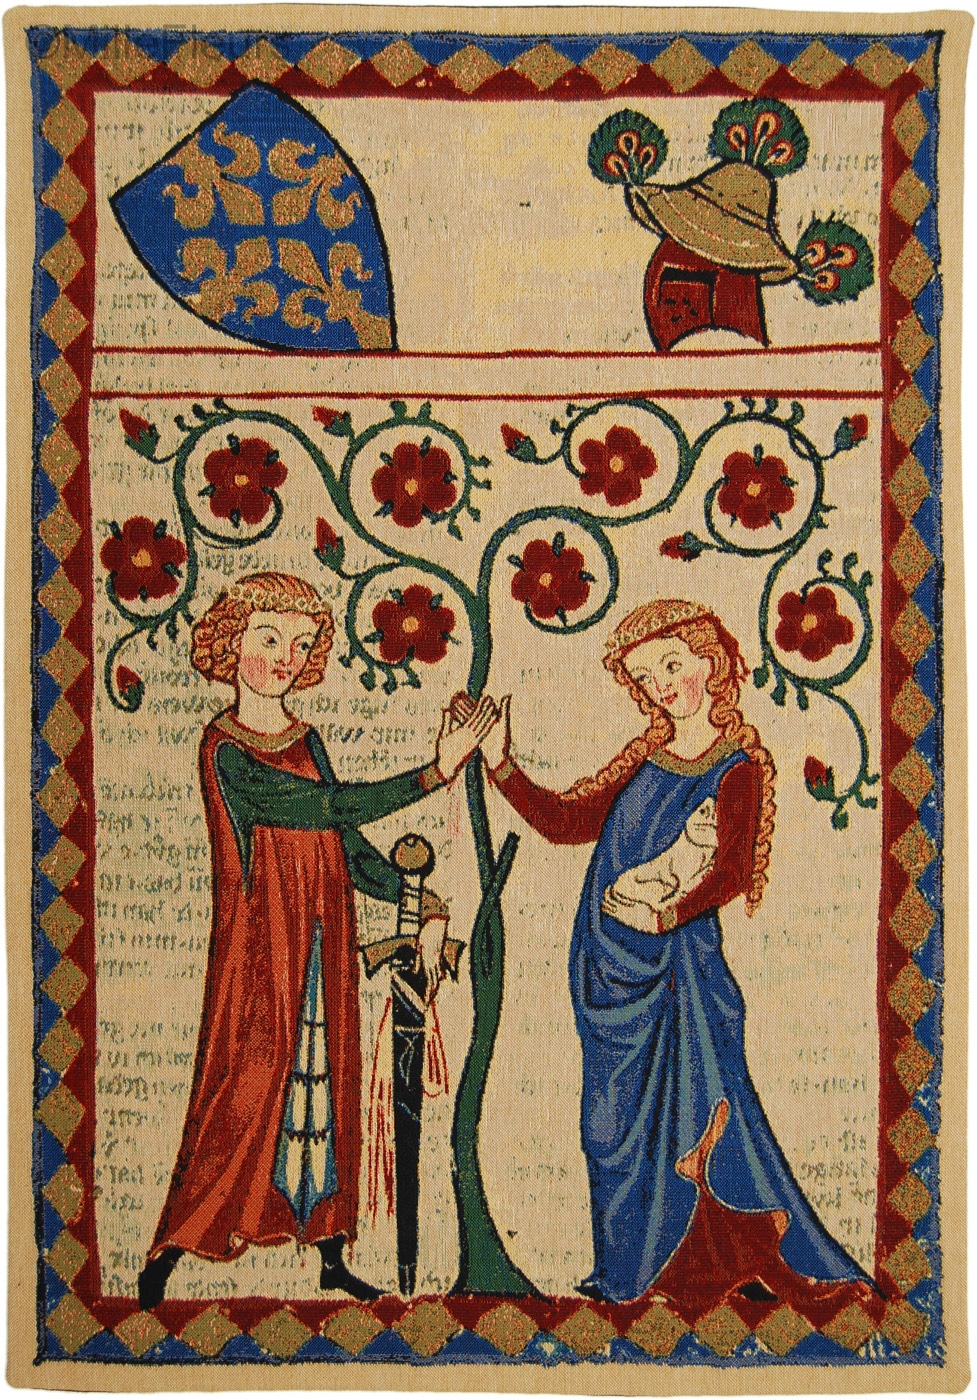 Bernger von Horheim, Le seigneur Dietmar von Aist et sa dame. Codex compilé et illustré entre 1305 à 1340, à la demande de la famille Manesse. Conservé à la Bibliothèque de l'université de Heidelberg en Allemagne. 